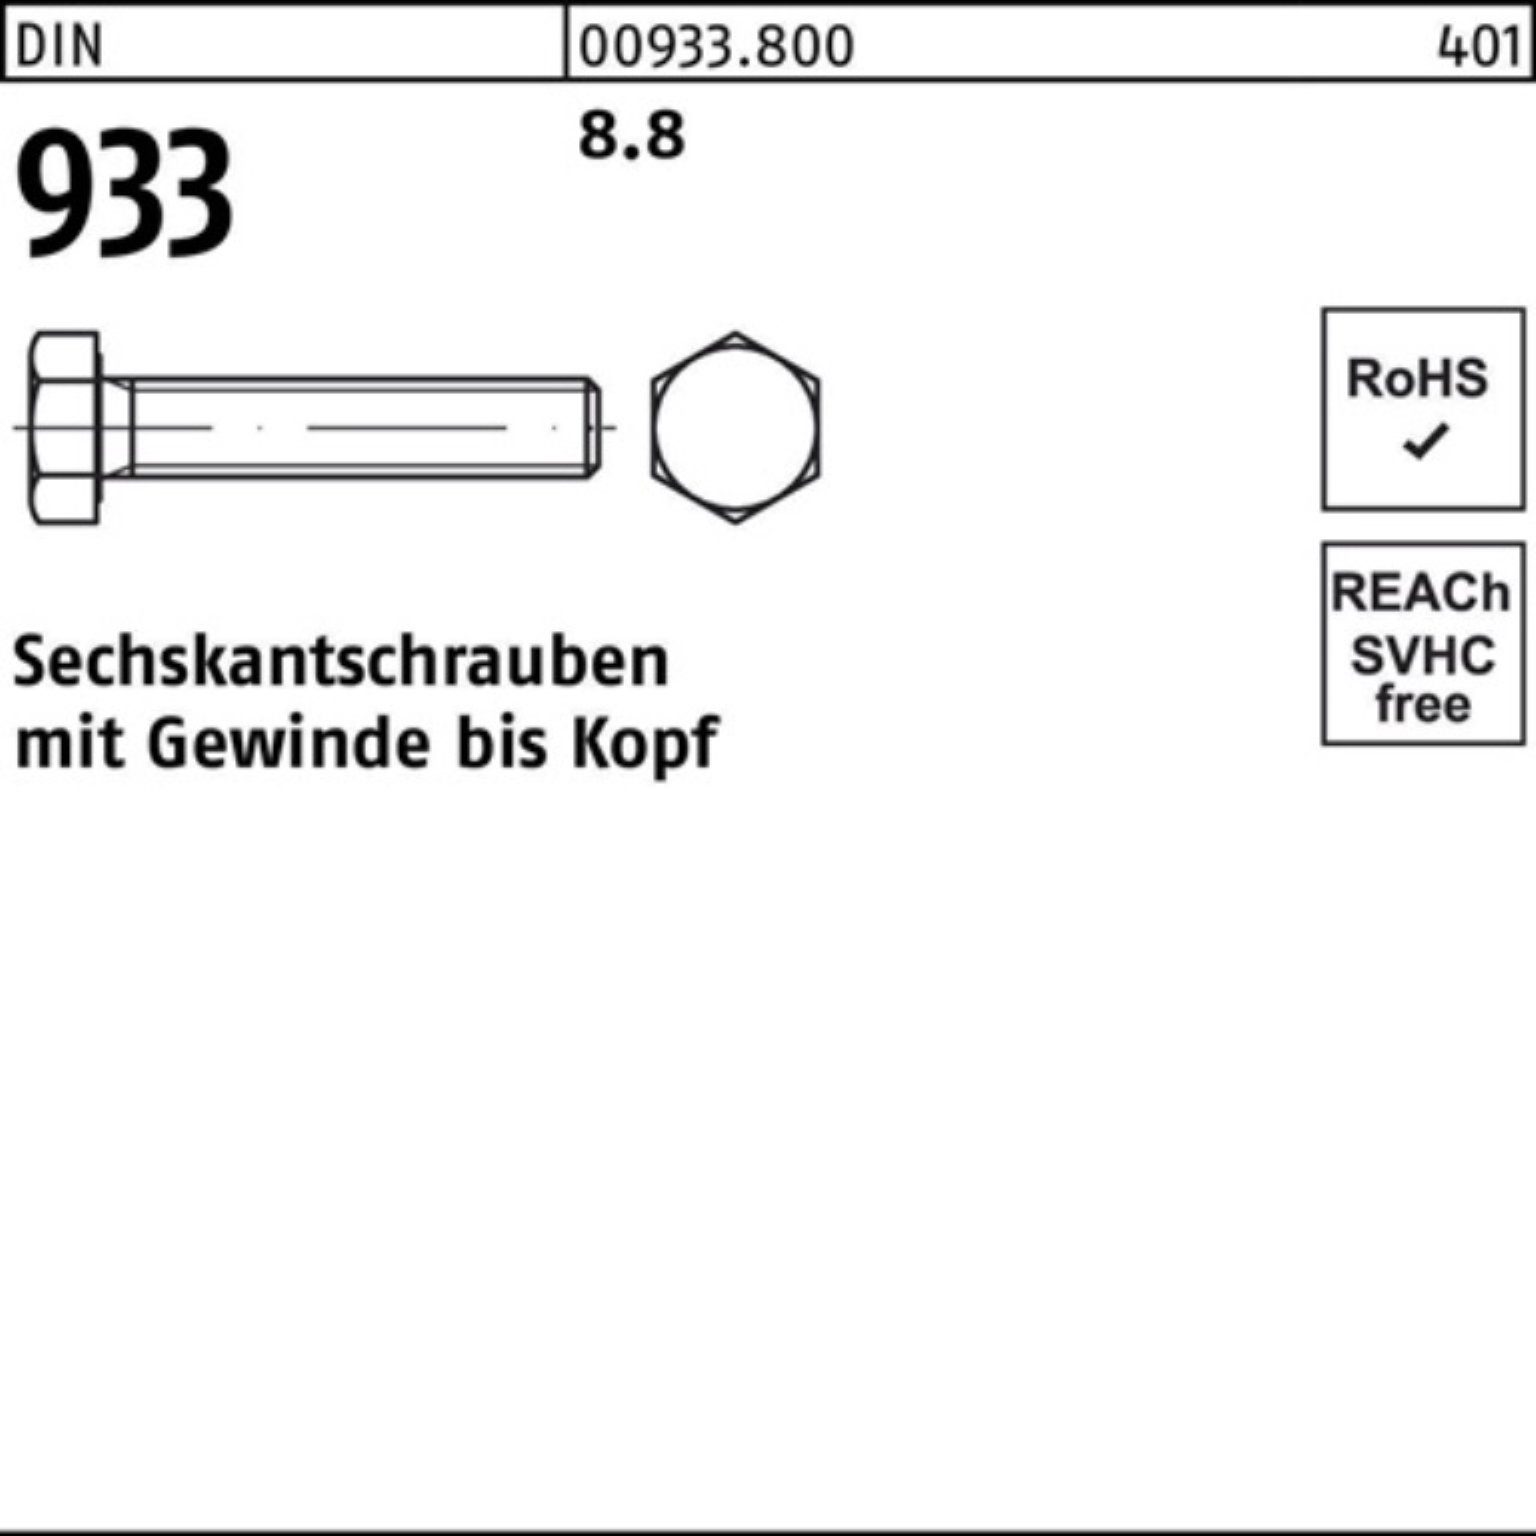 DIN Reyher Sechskantschraube Sechskantschraube 8.8 100er 190 933 DIN VG 933 1 Pack Stück M33x